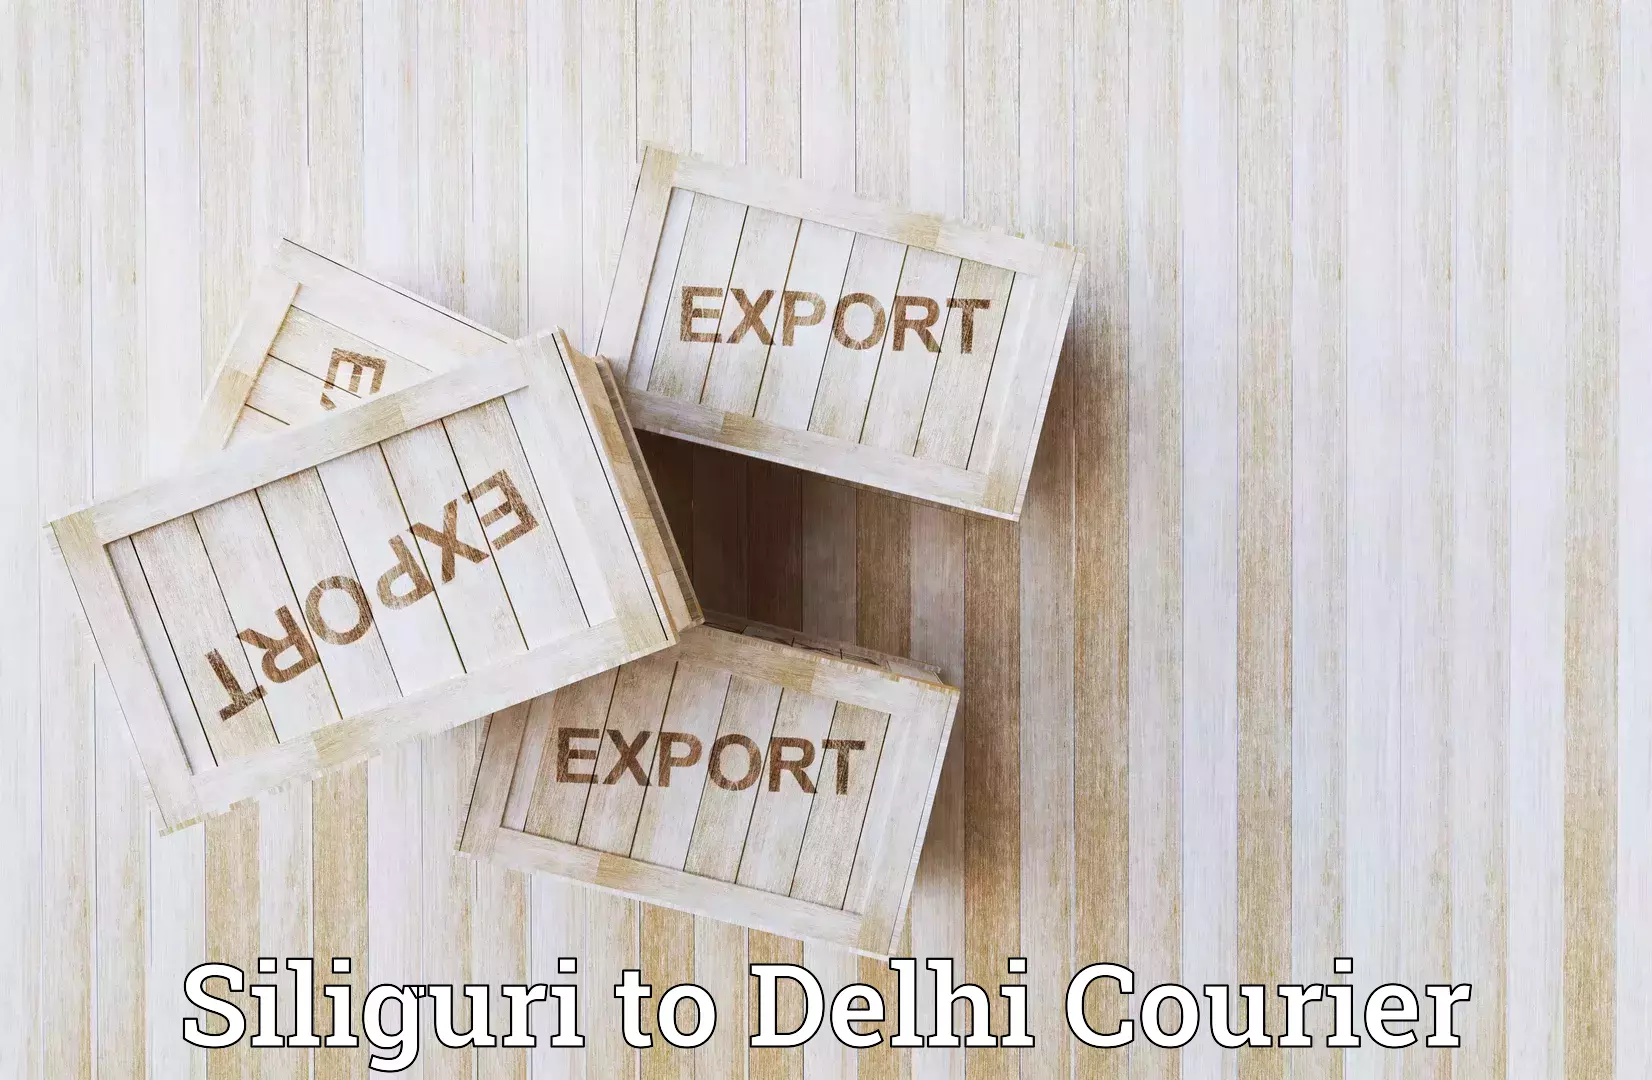 Cargo delivery service Siliguri to Delhi